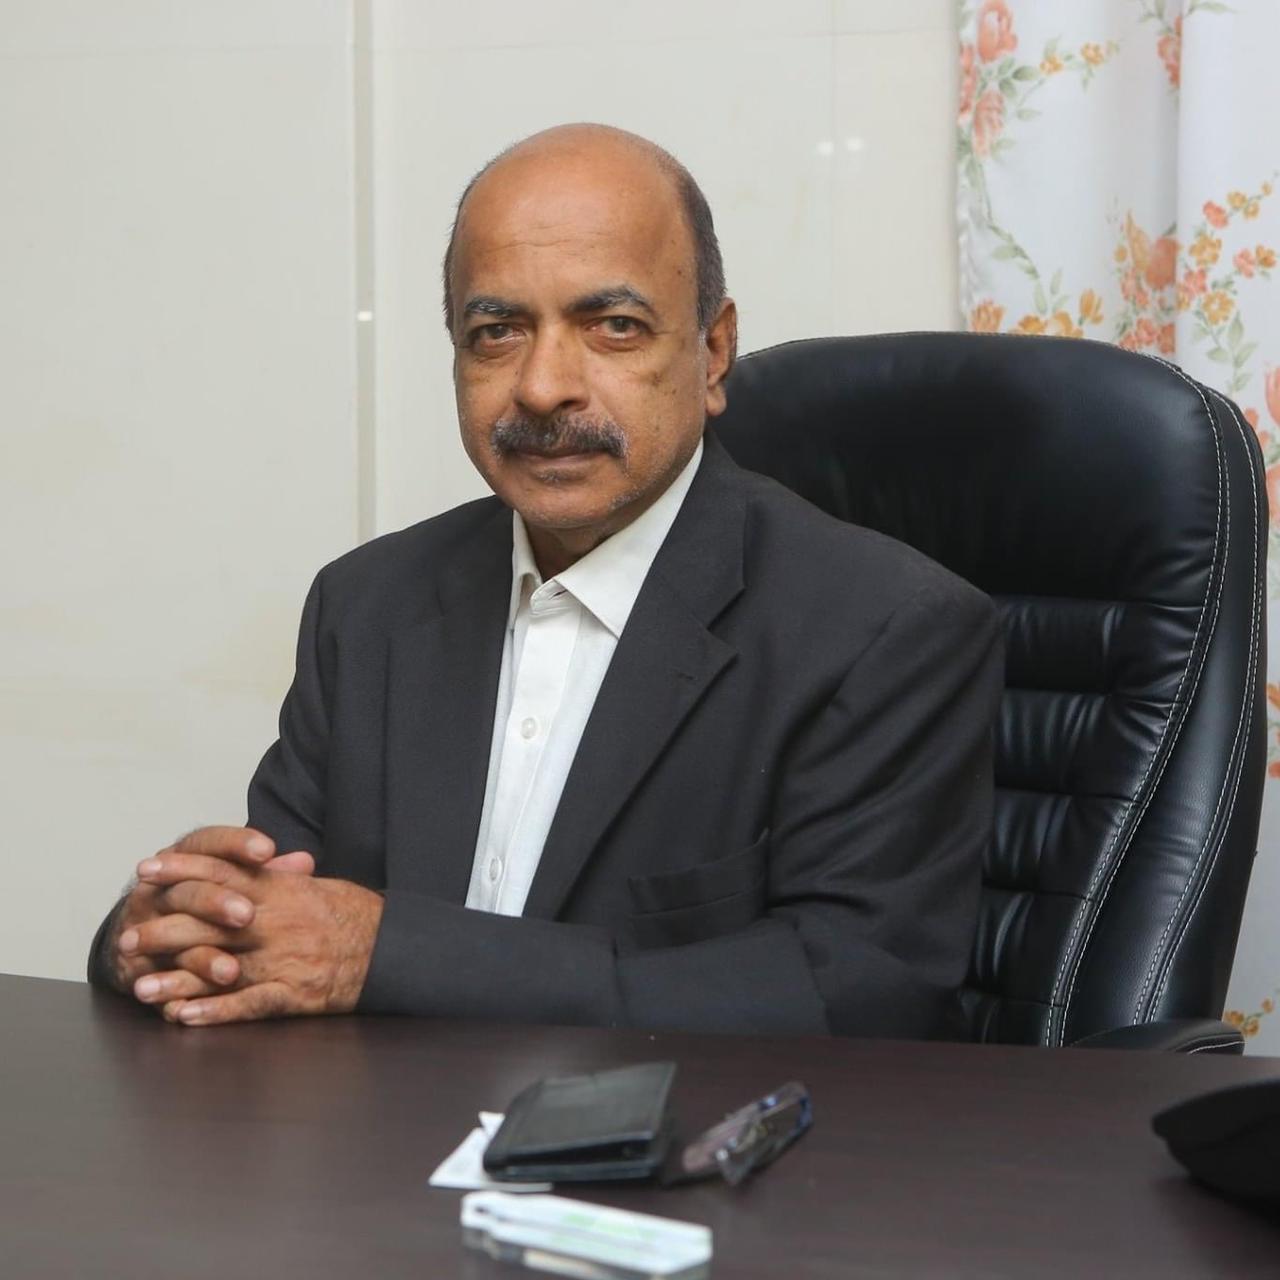 Dr. Madhavan G. Pillai